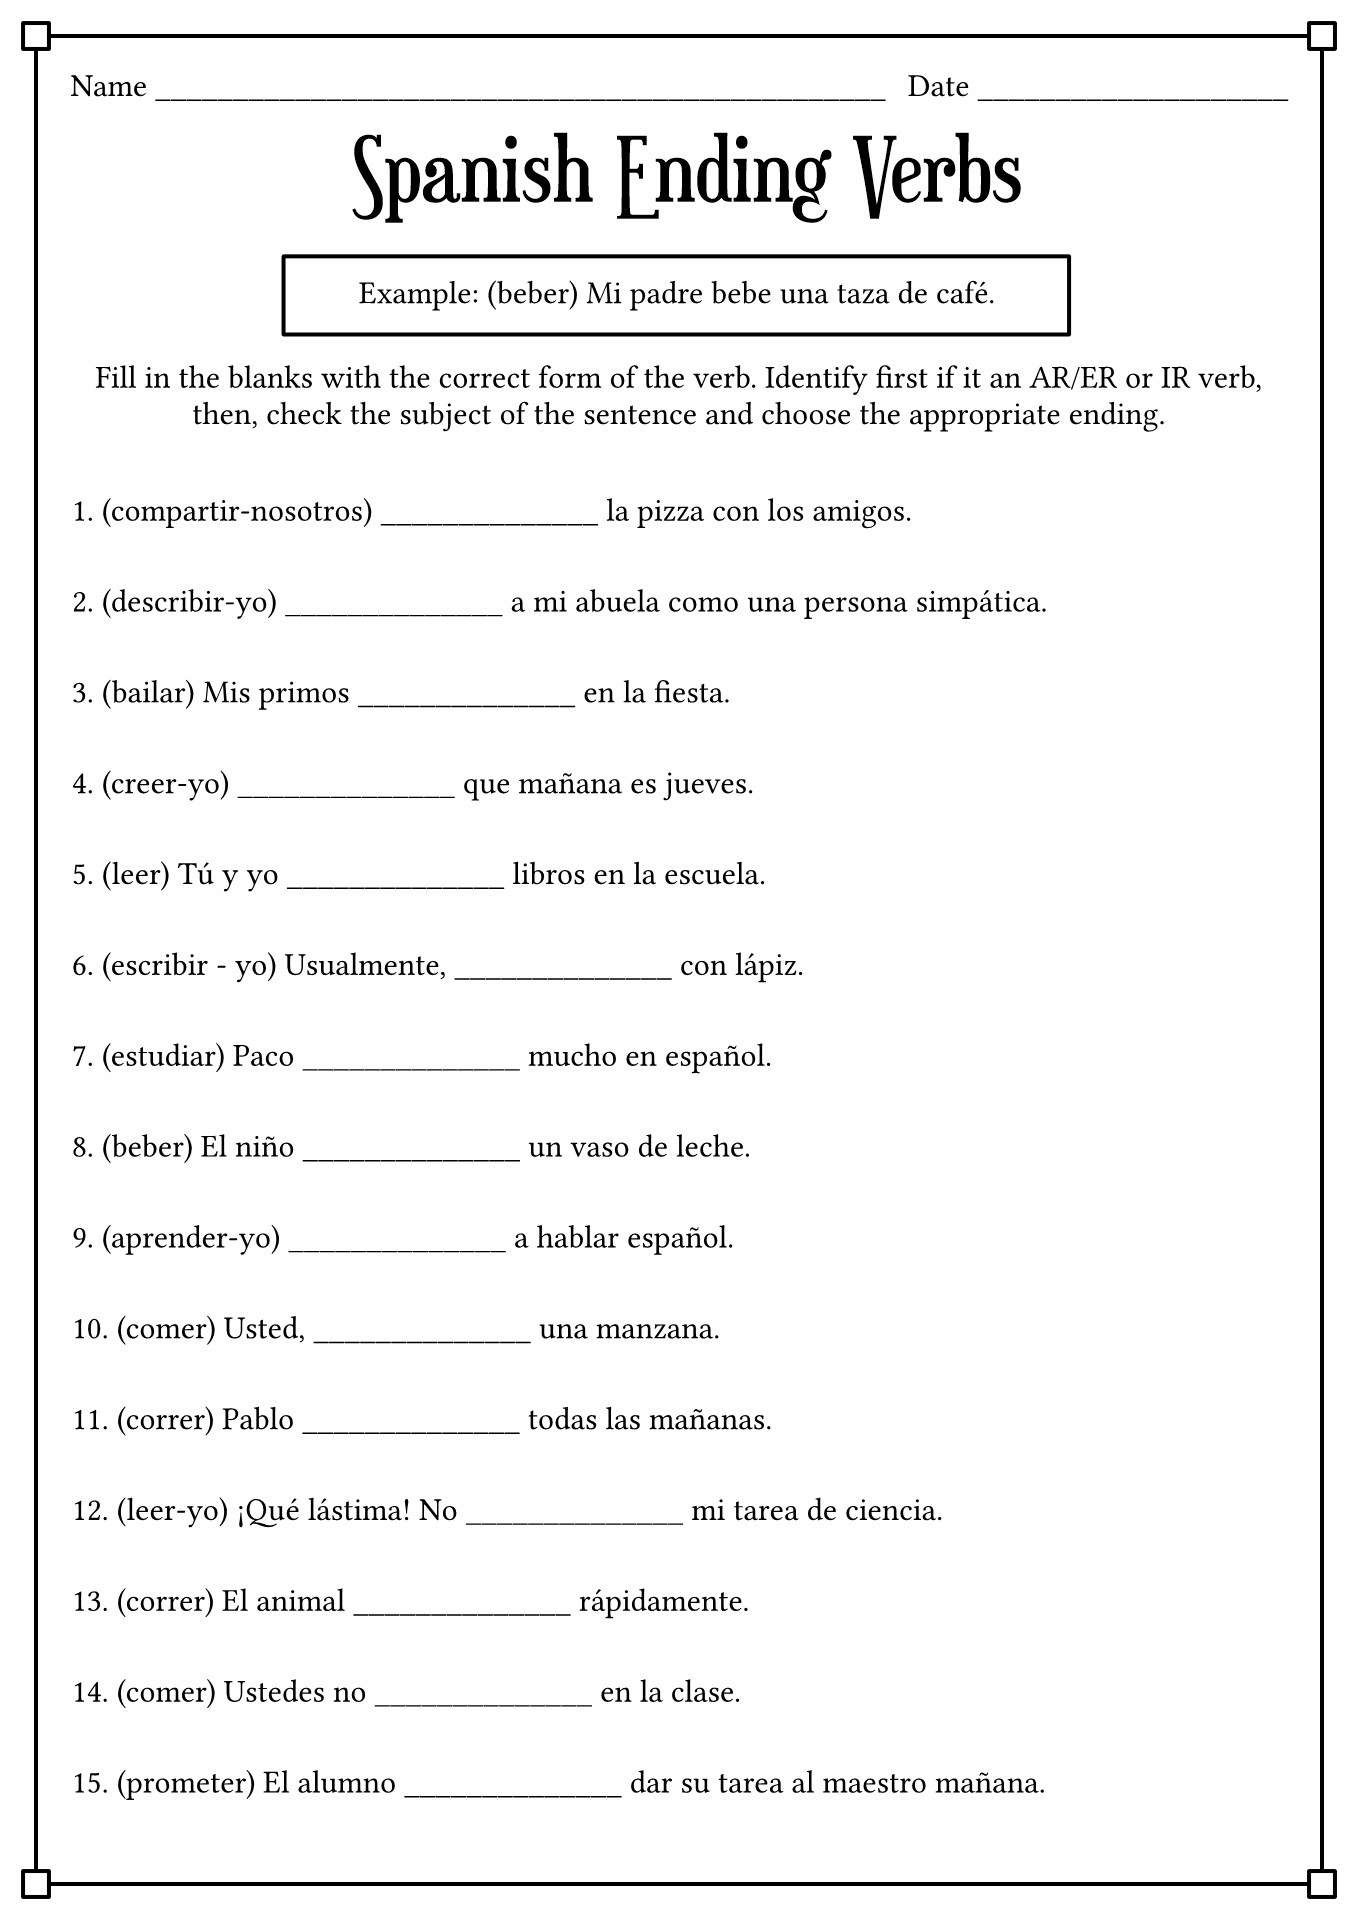 17-best-images-of-spanish-conjugation-worksheets-printable-spanish-verb-conjugation-worksheets